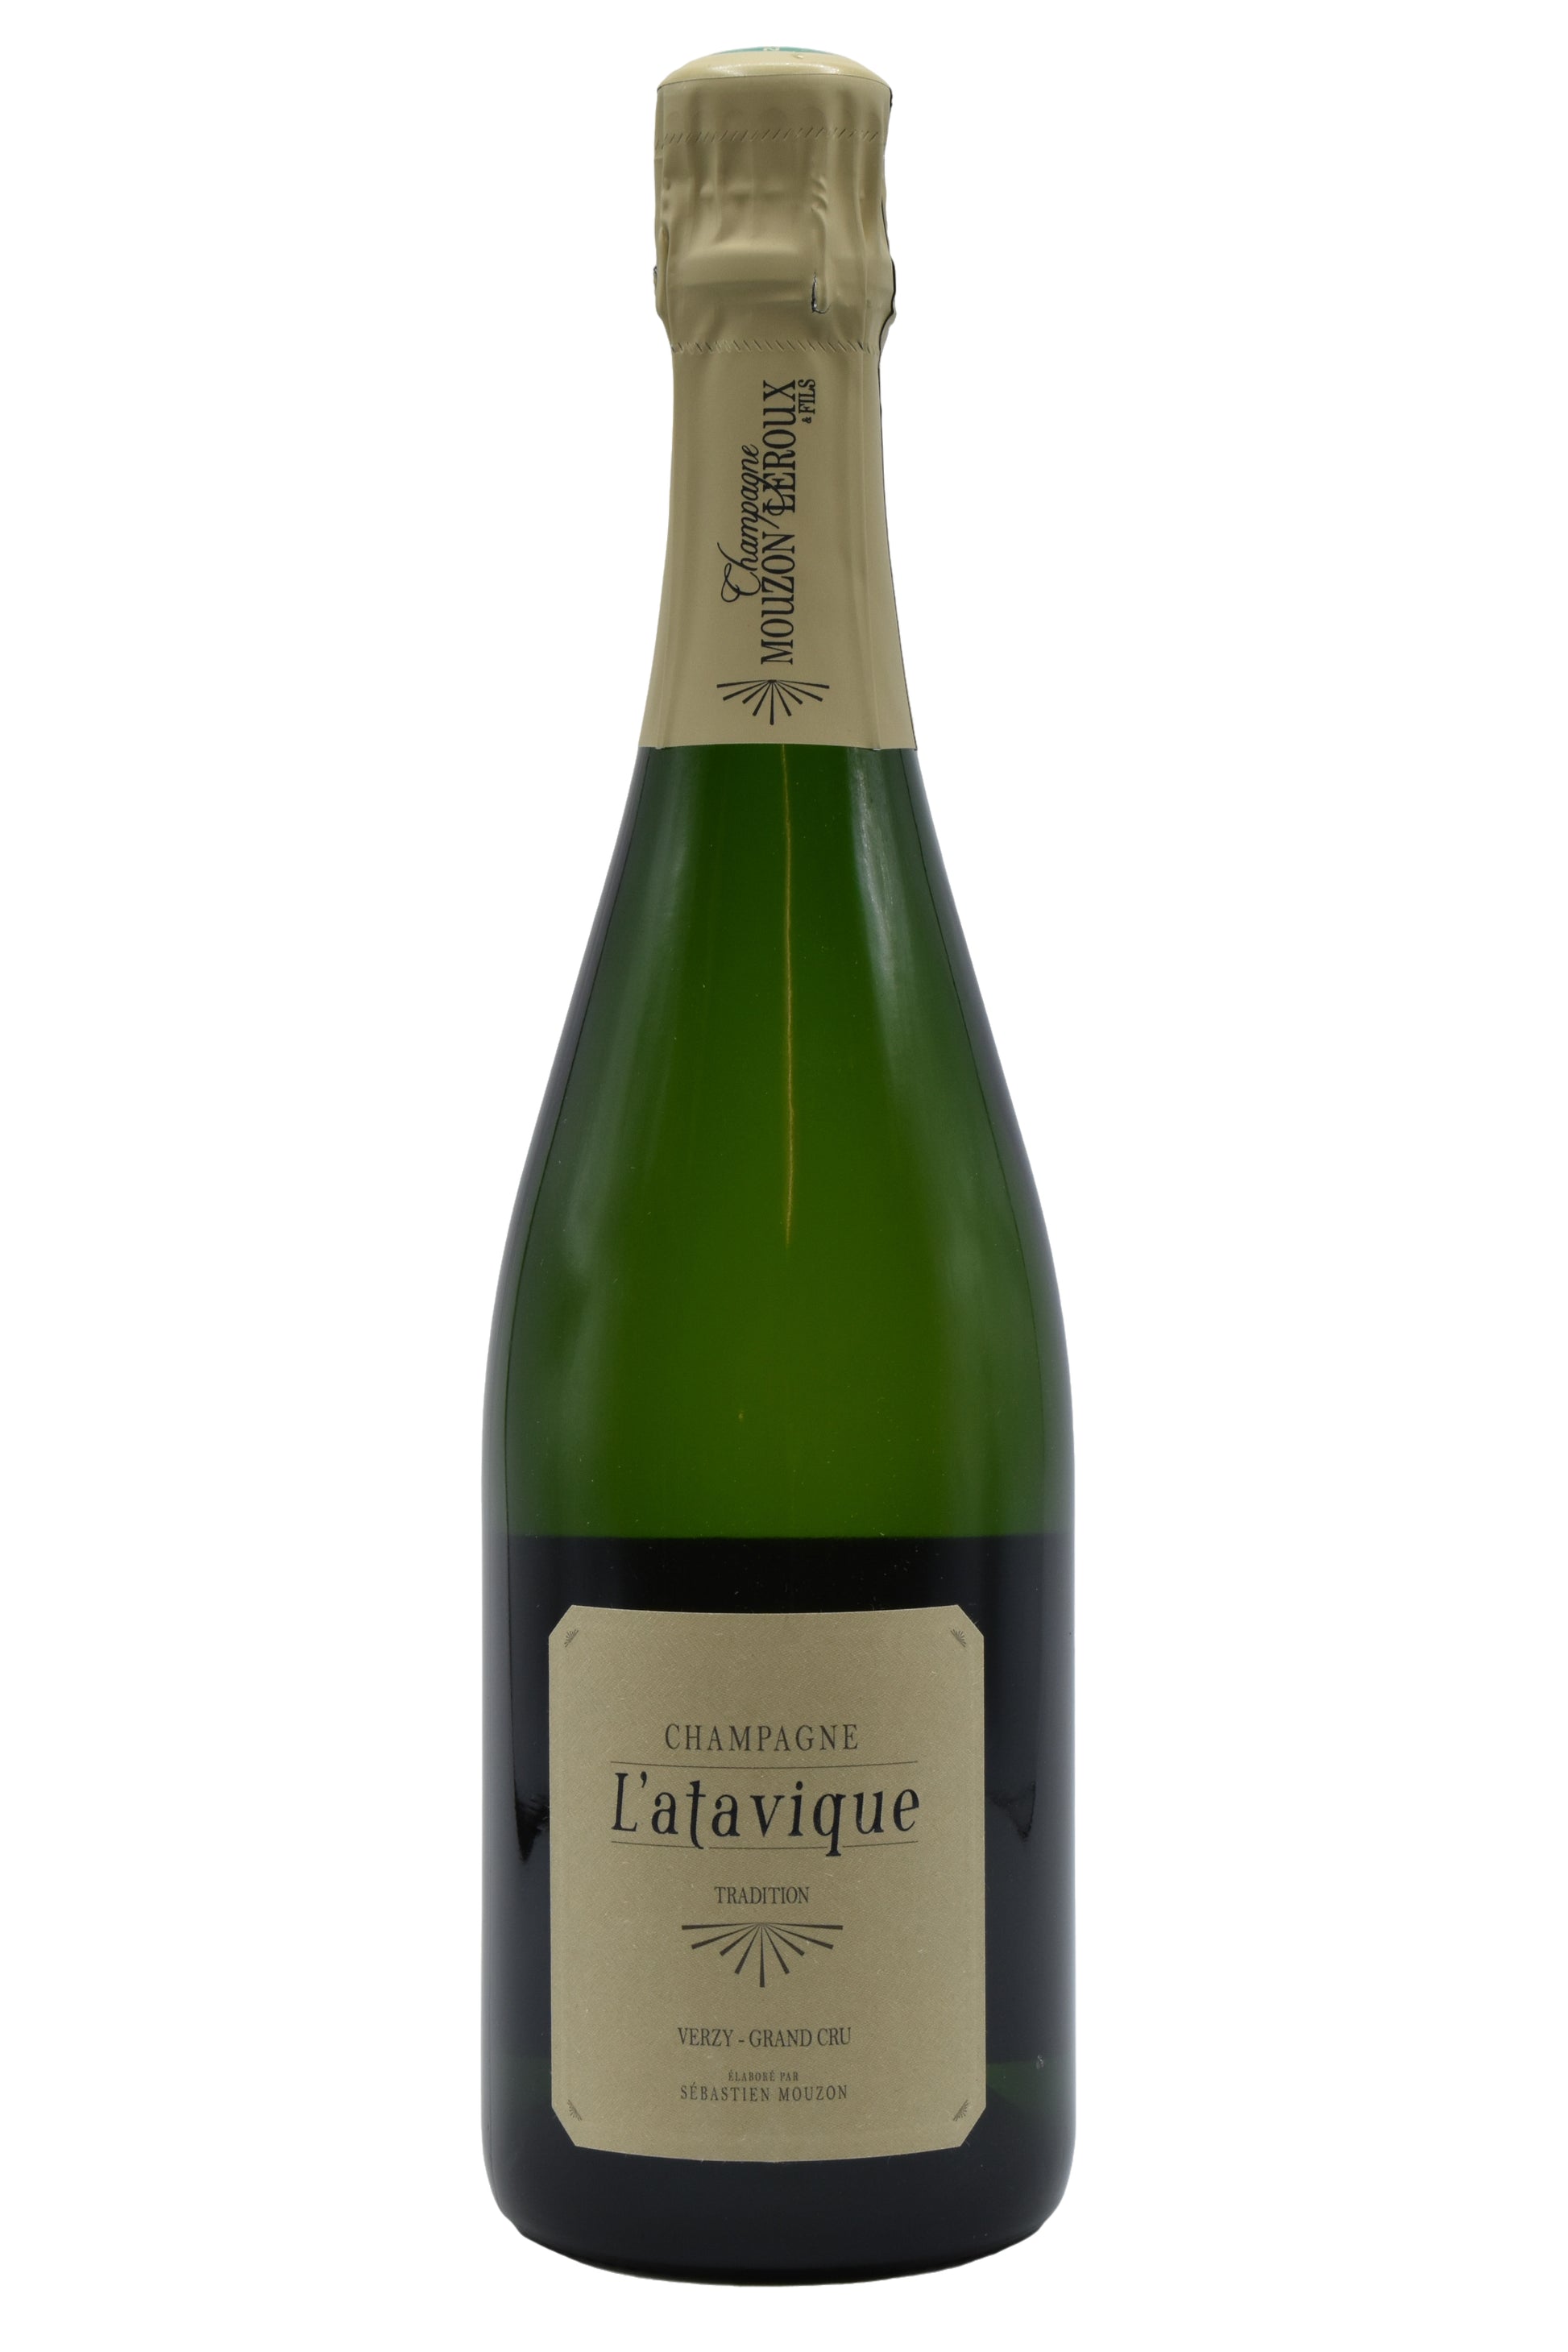 NV Mouzon-Leroux, Champagne L'Atavique Tradition 750ml - Walker Wine Co.